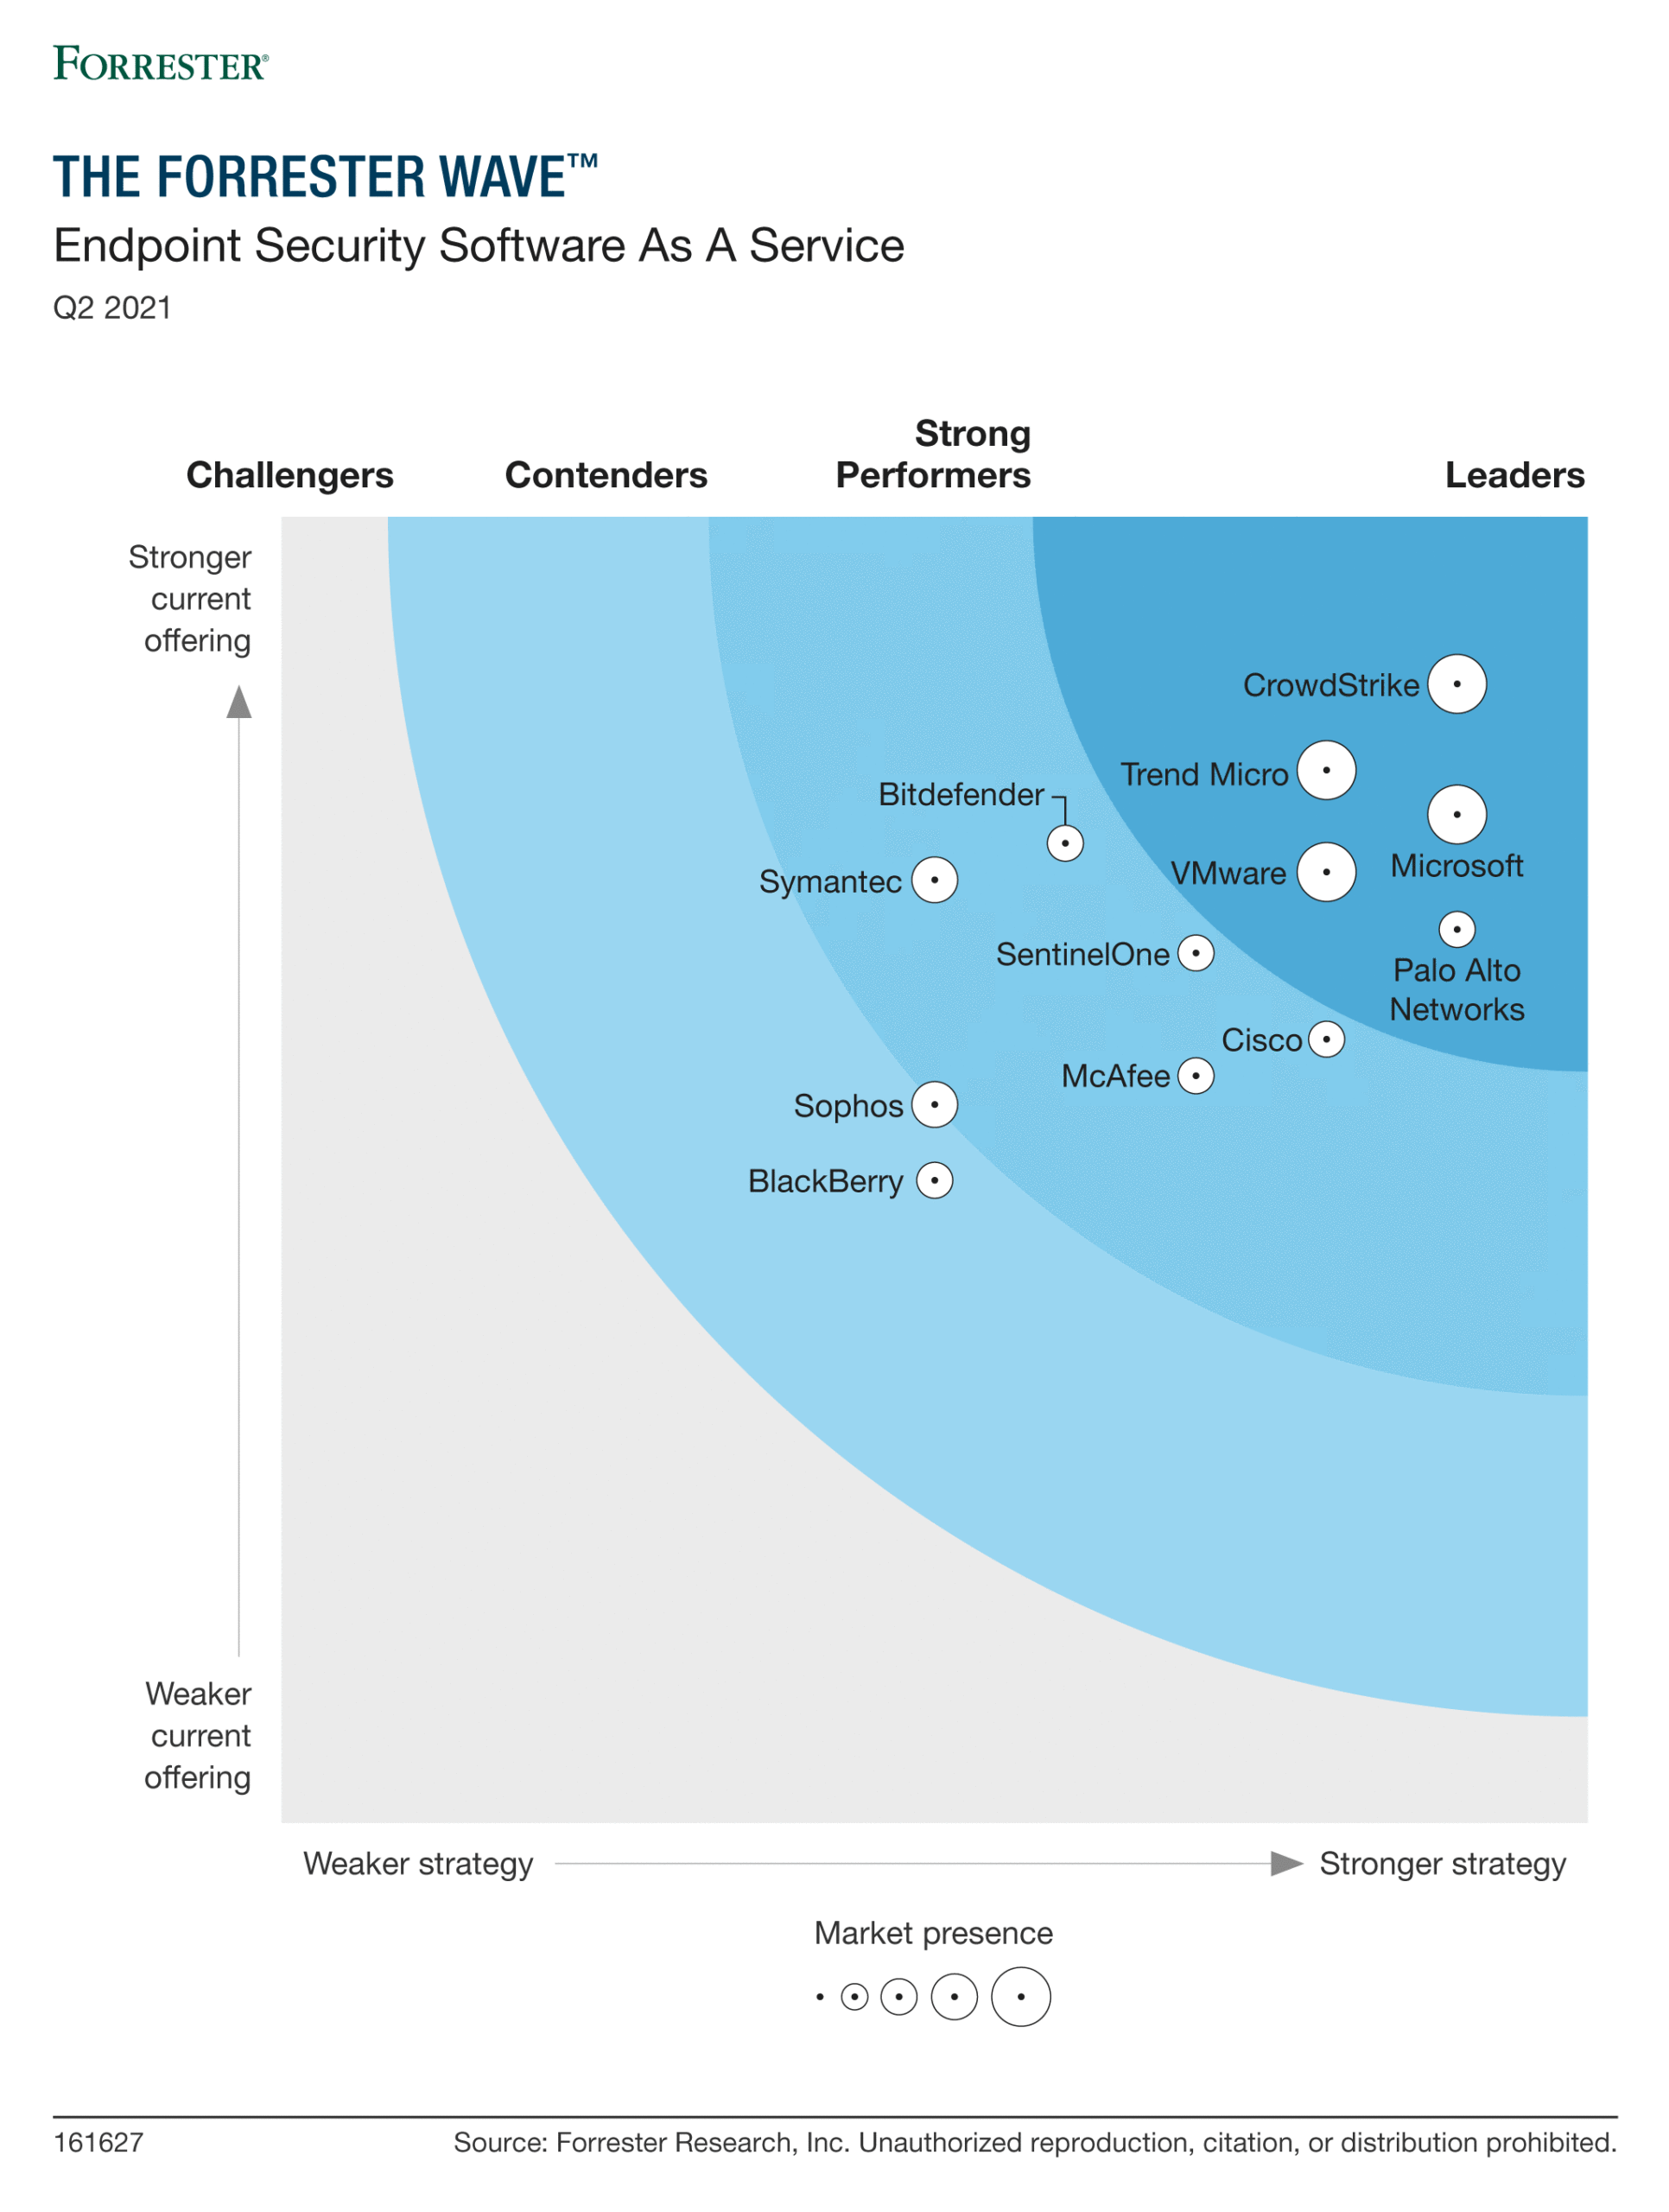 Forrester WaveTM: サービスとしてのエンドポイント セキュリティ、2021 年第 2 四半期のグラフィックは、Microsoft がリーダー スペースにいることを示しています。